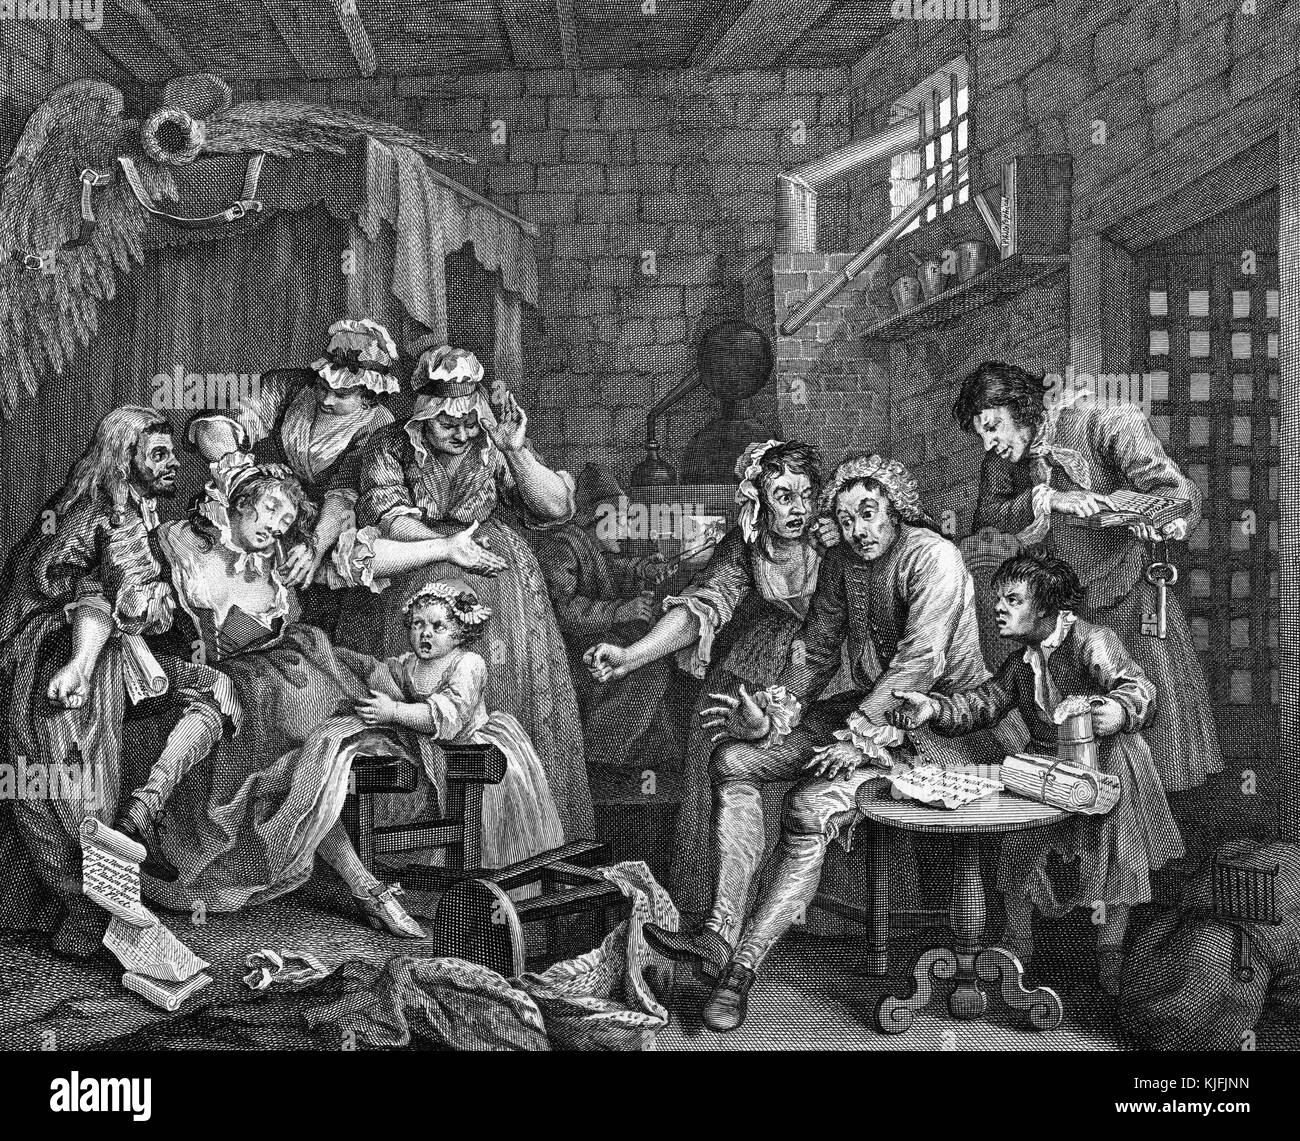 Gravur und Gravur auf Papier mit dem Titel "A Rake's Progress, Plate 7, The Rake, Tom Rakewell sitzt dumm in einem Schuldnergefängnis. er zeigt eine Gruppe von Menschen in einem Zimmer, einige Kinder, eine Frau, die mit Salzen erwacht wird, nachdem sie ohnmächtig geworden ist, von William Hogarth, 1735. Aus der New York Public Library. Stockfoto